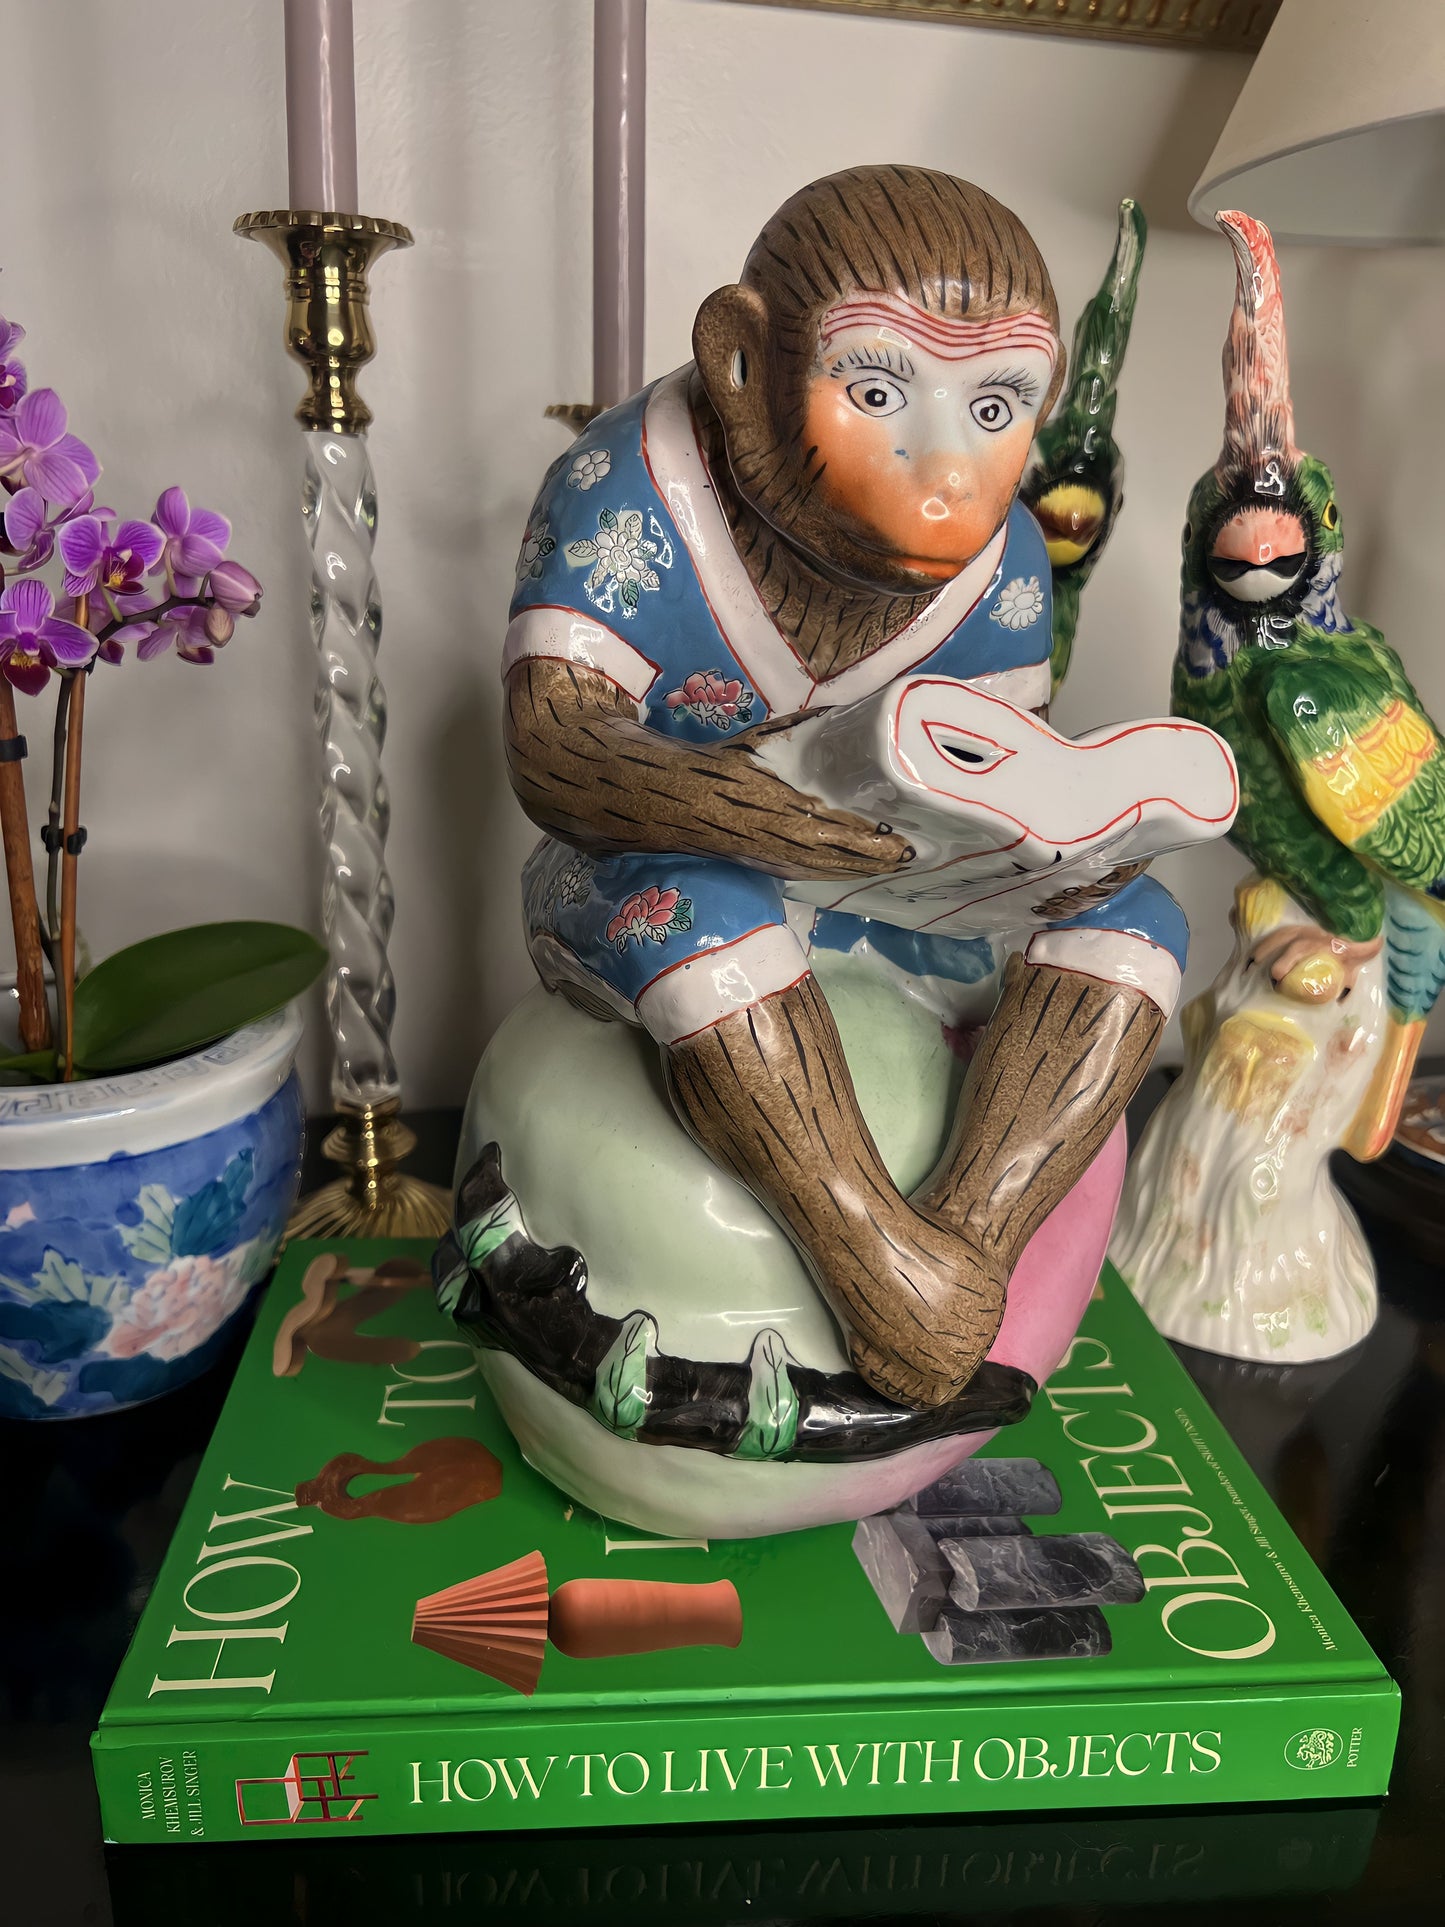 Vintage Large Whimsical Chinoiserie Sitting Monkey